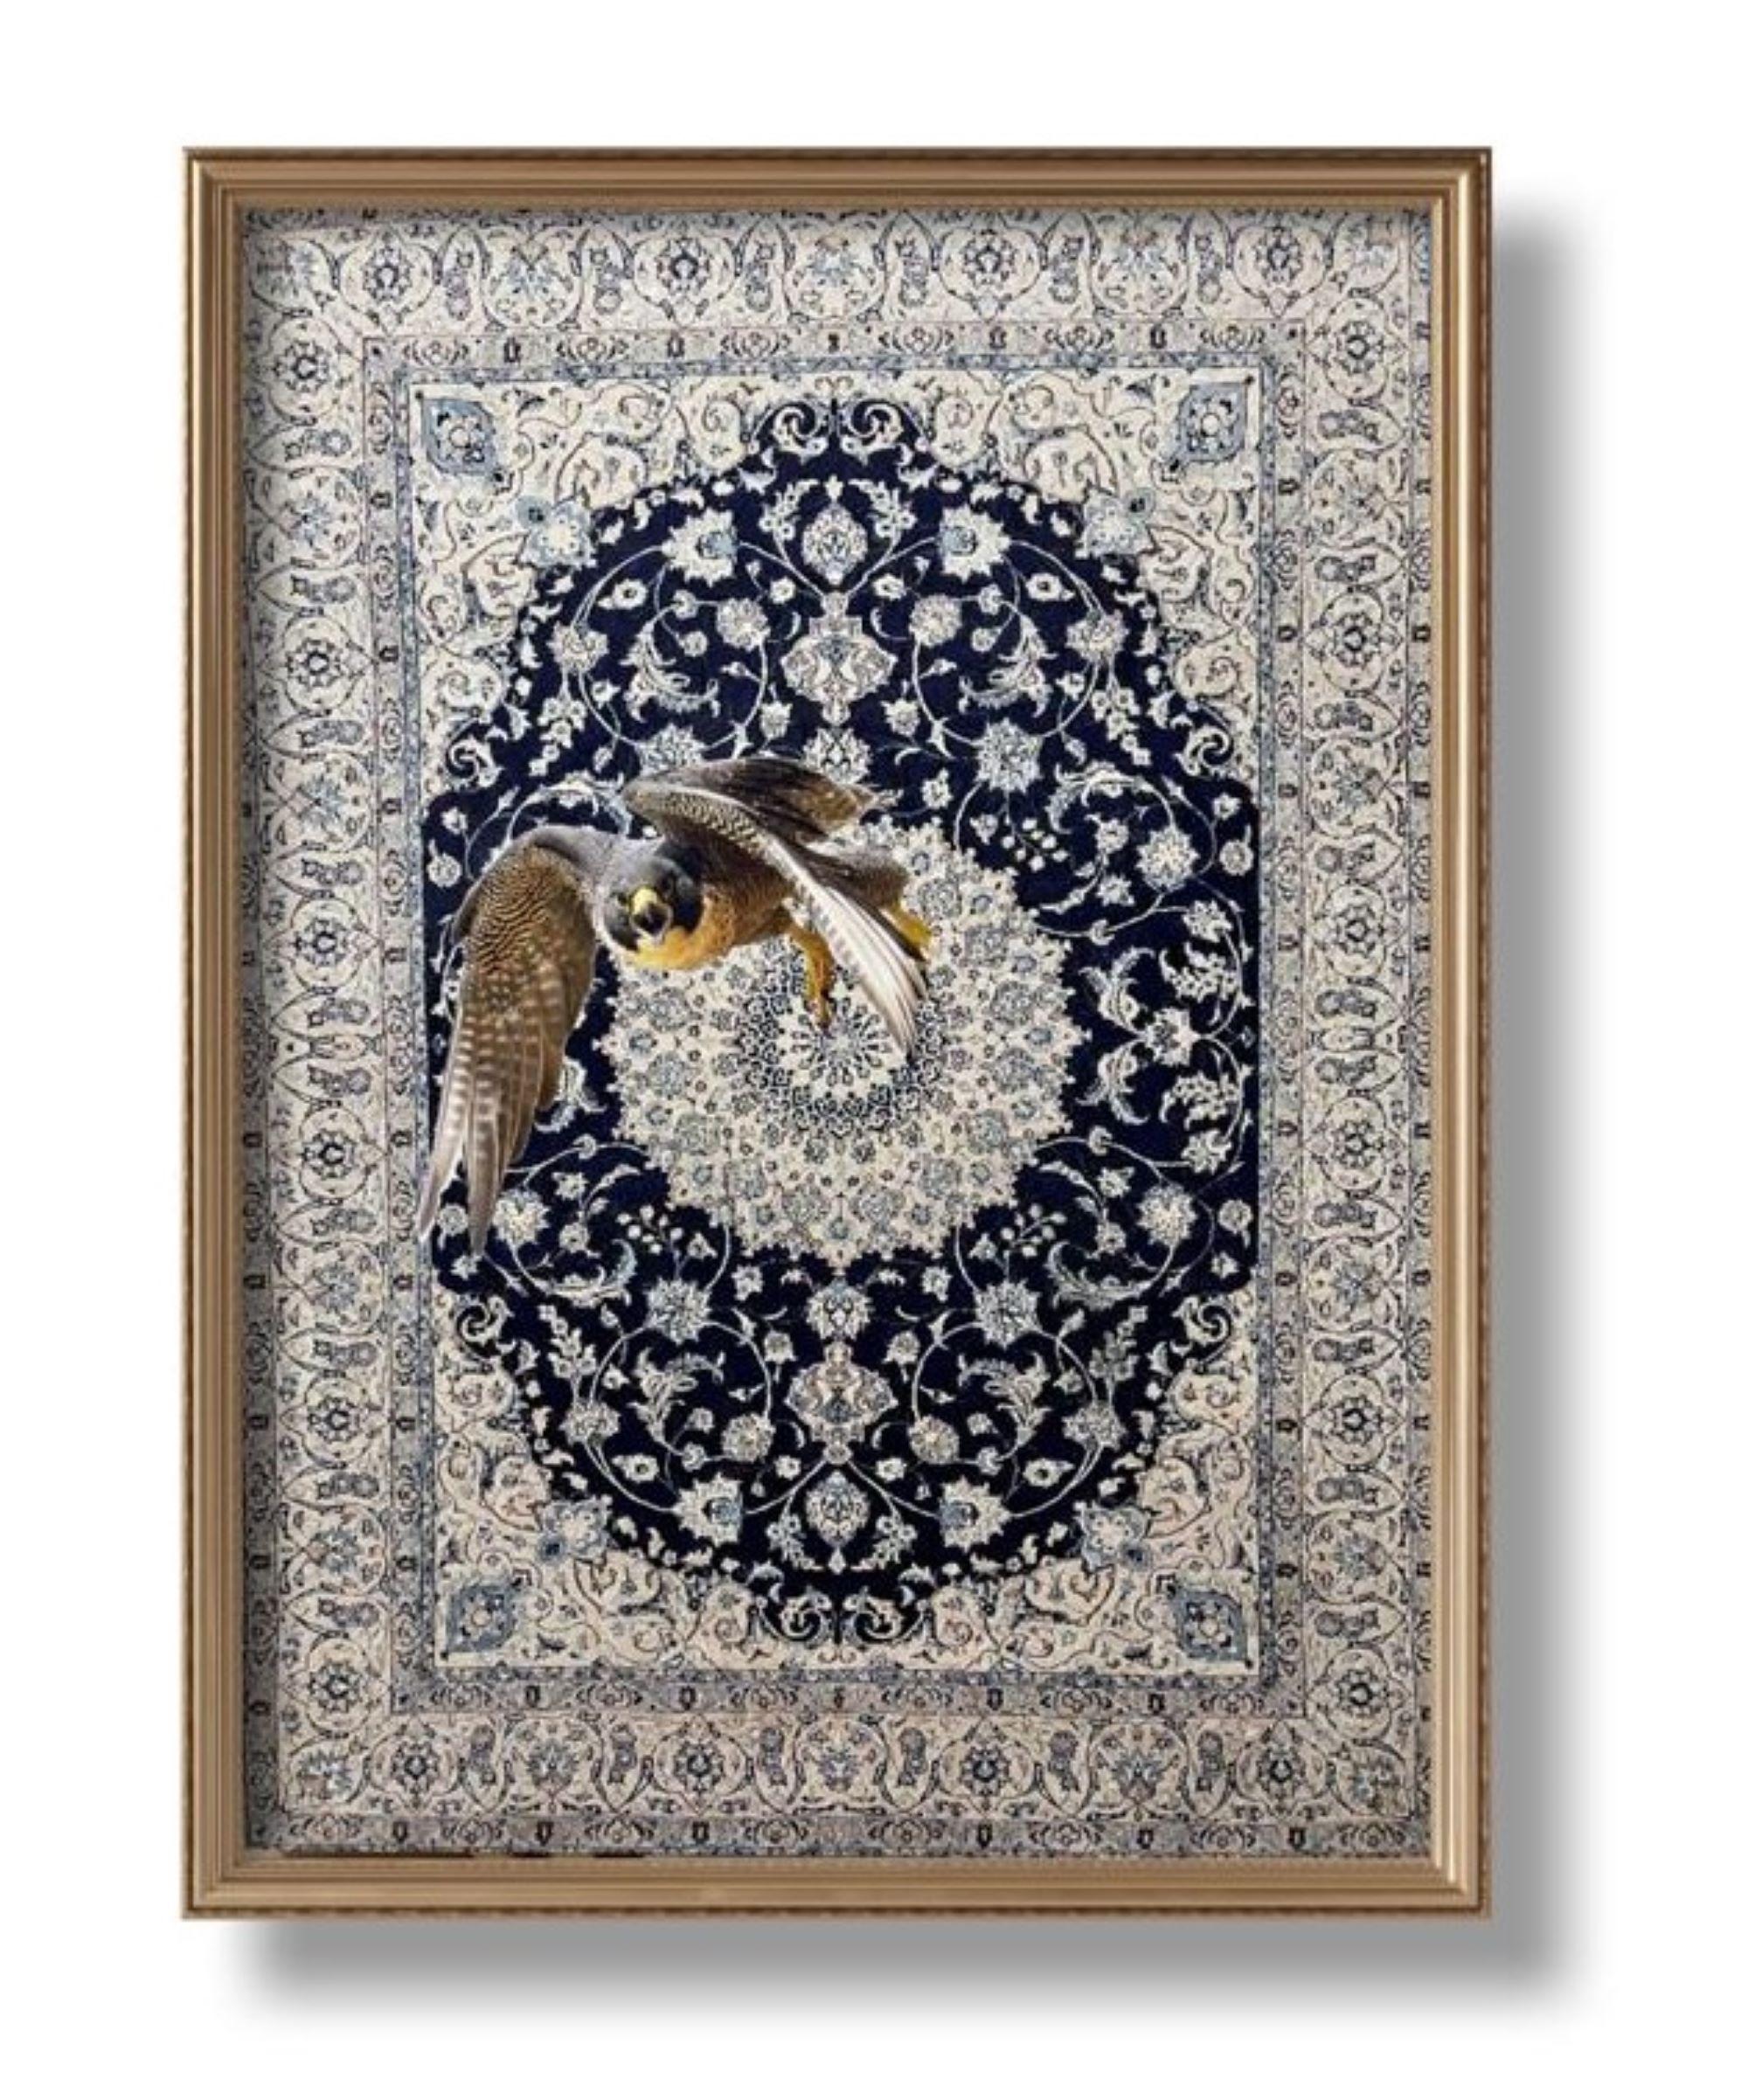 Falcon Morphing aus Wandteppich, Öl auf Leinwand, Originalgemälde 